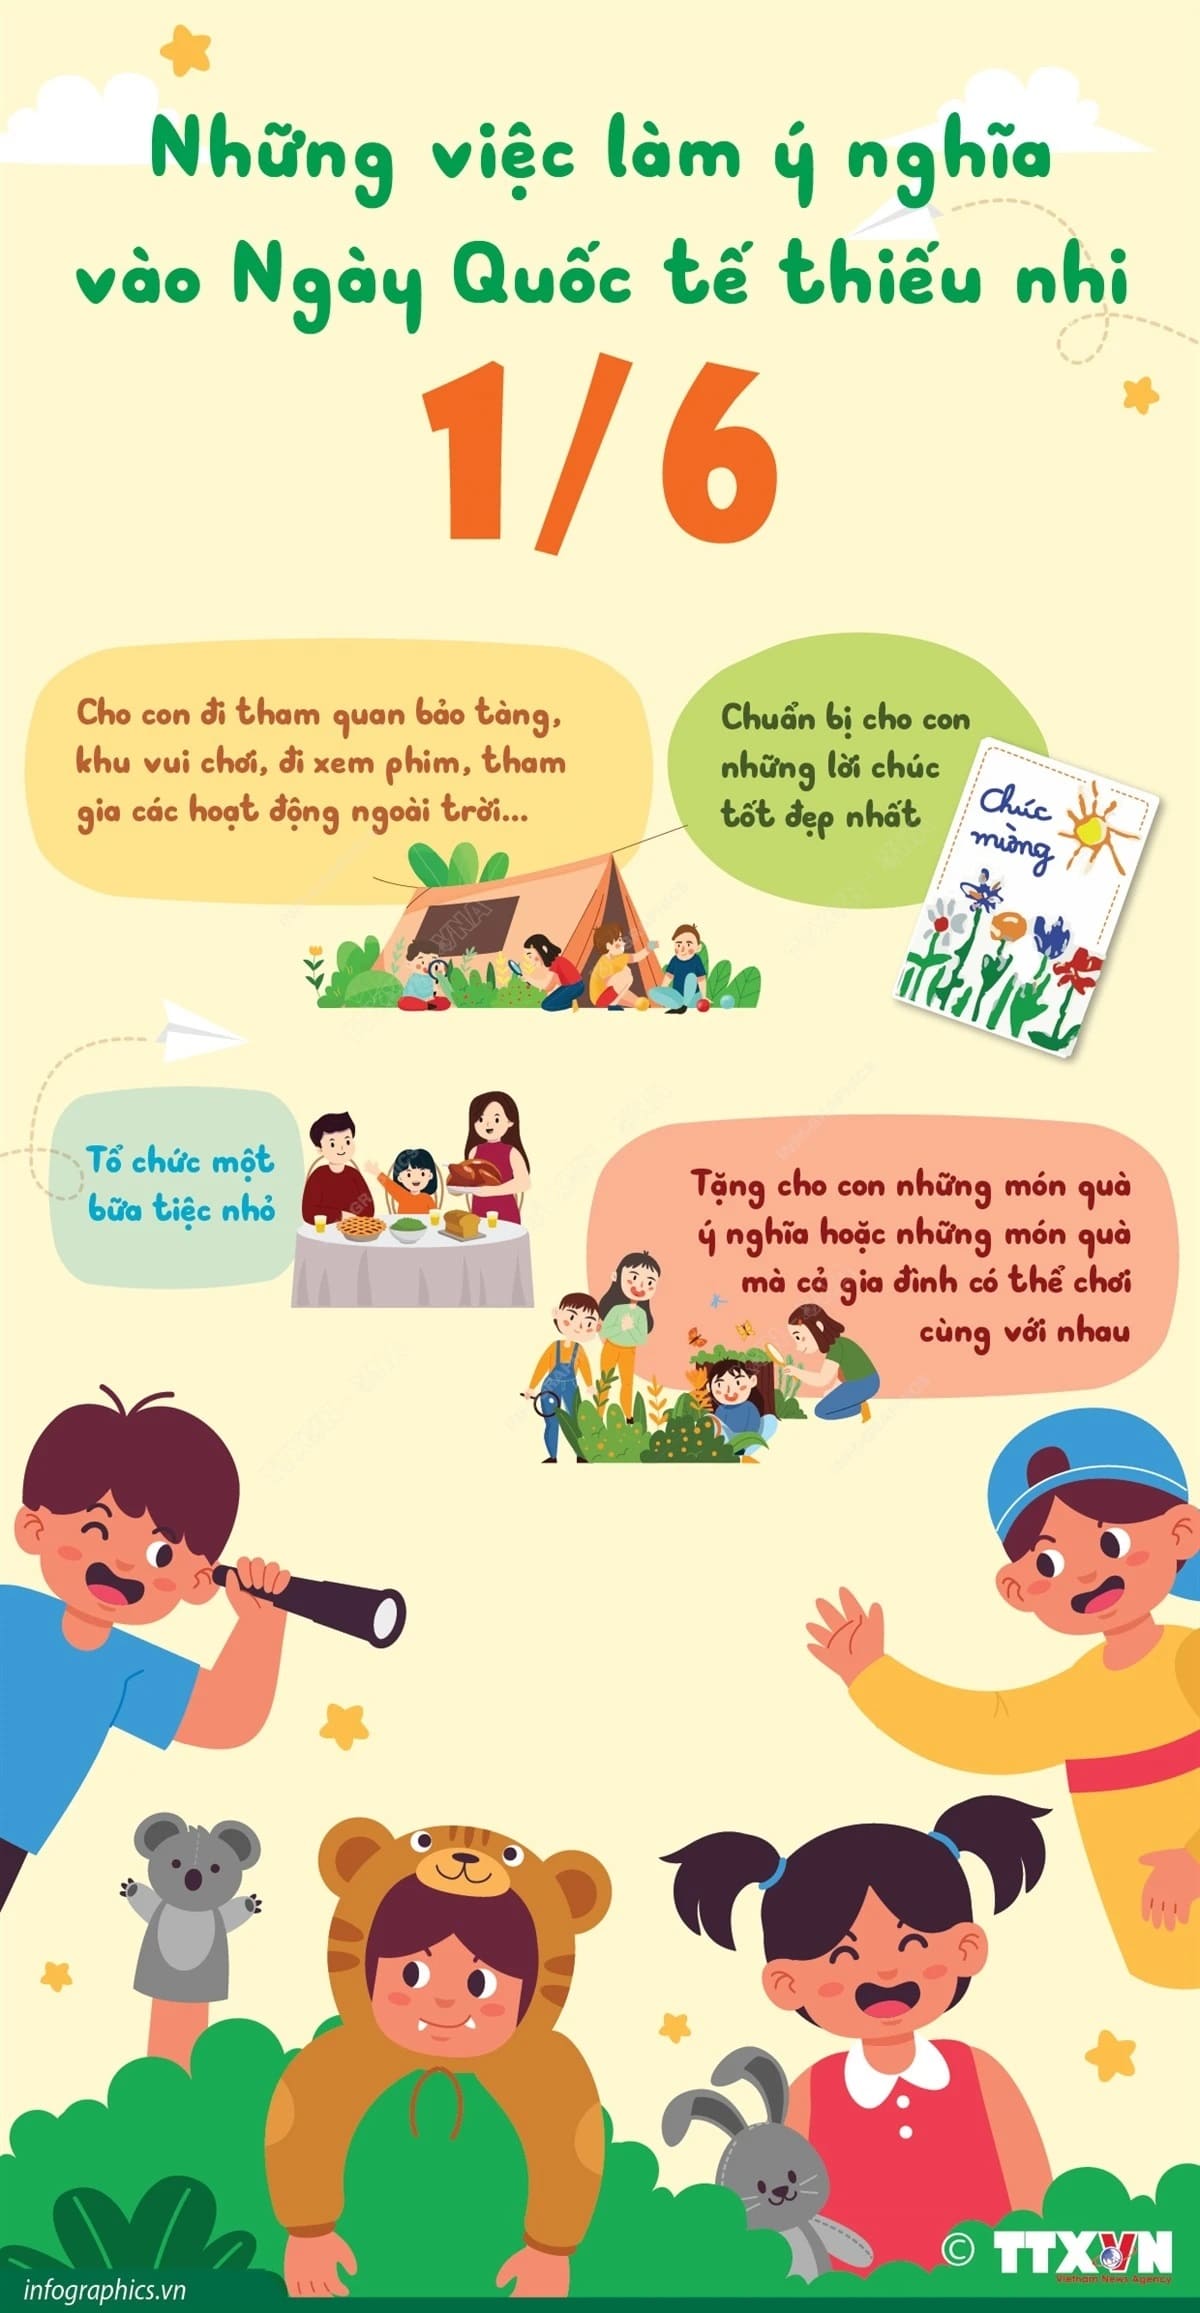 Nhung viec lam y nghia danh cho tre em min - Những việc làm ý nghĩa dành cho trẻ em trong Ngày Quốc tế Thiếu nhi